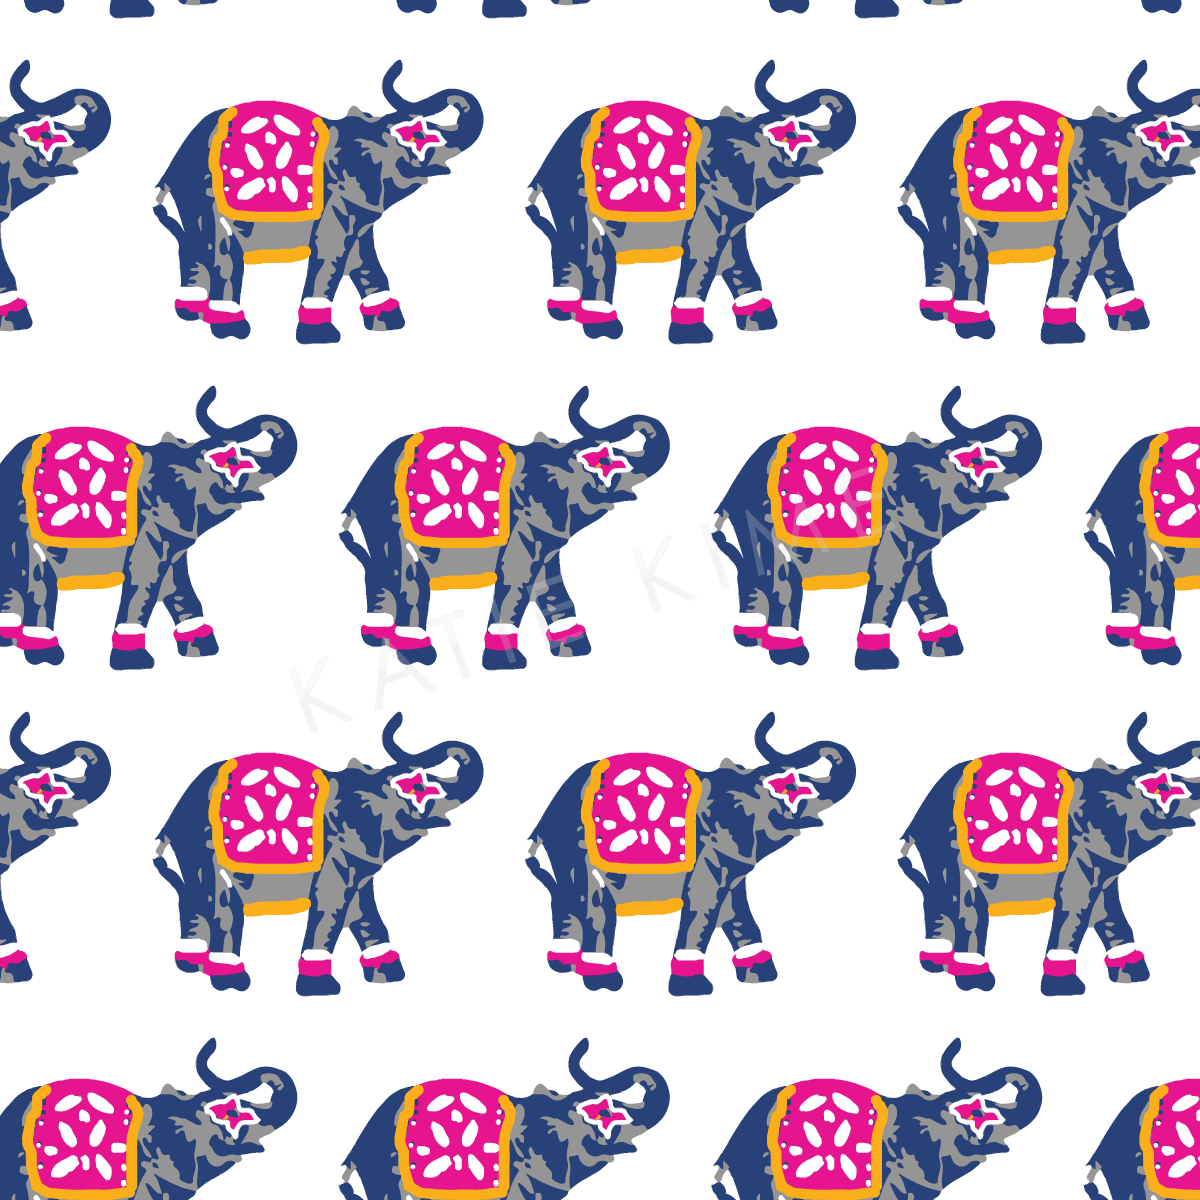 Wallpaper Double Roll Elephants March Wallpaper Katie Kime